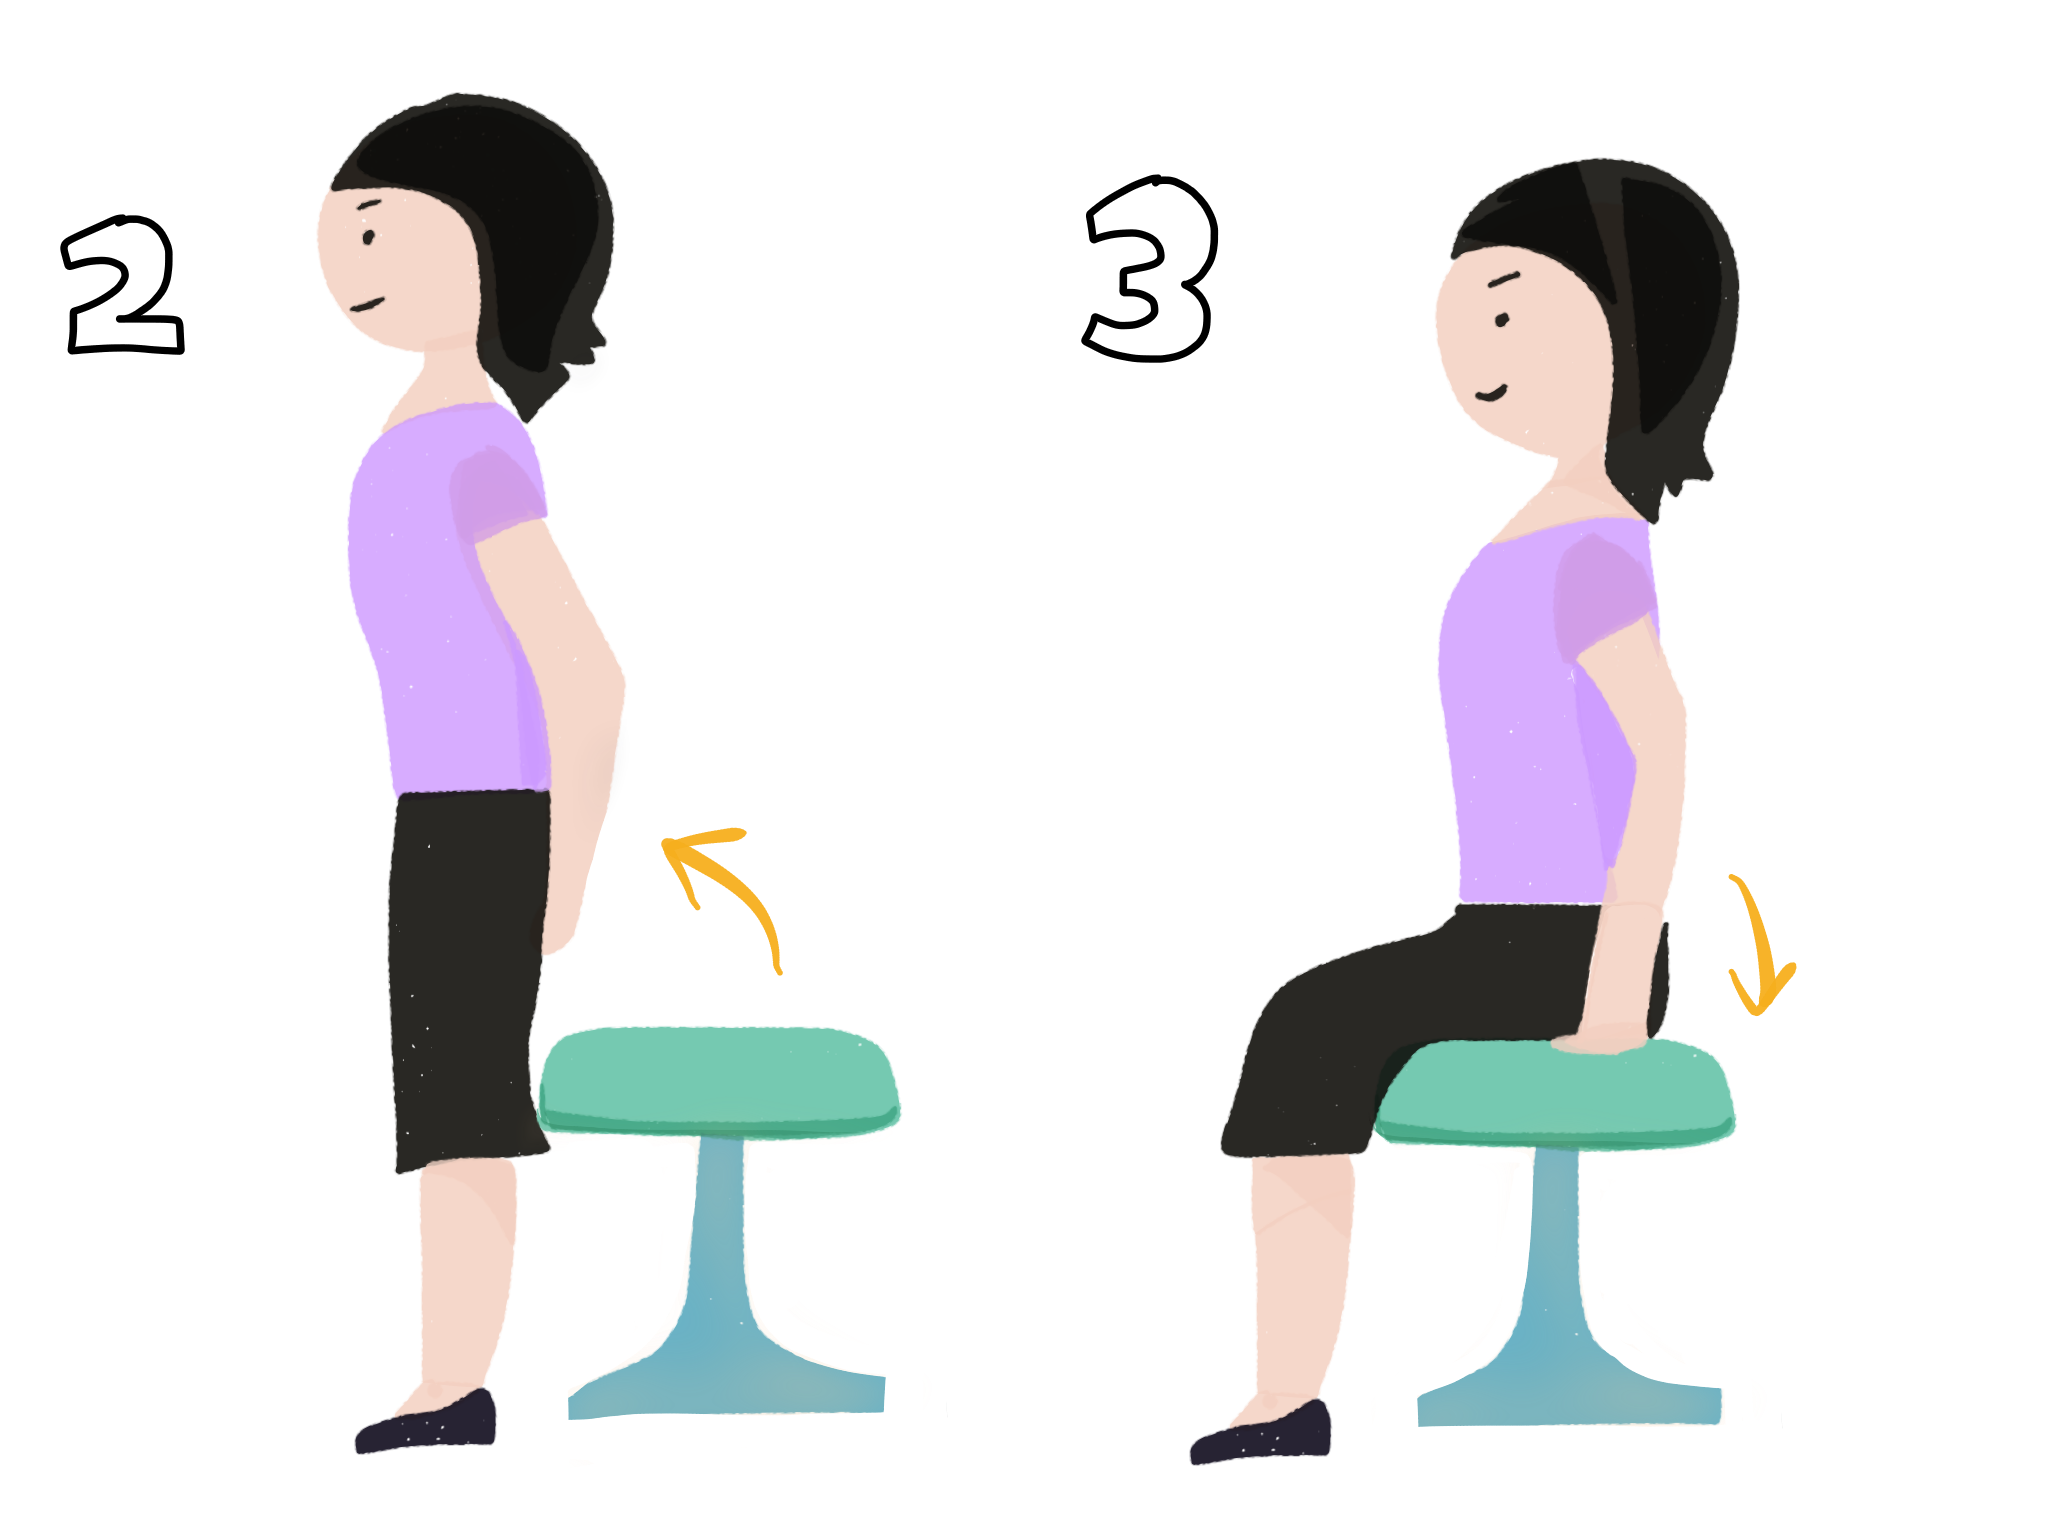 デスクワーク時の姿勢を一瞬で整える方法 坐骨座り 養生らいふ イラストで学ぶ ゆるゆるセルフケア情報サイト